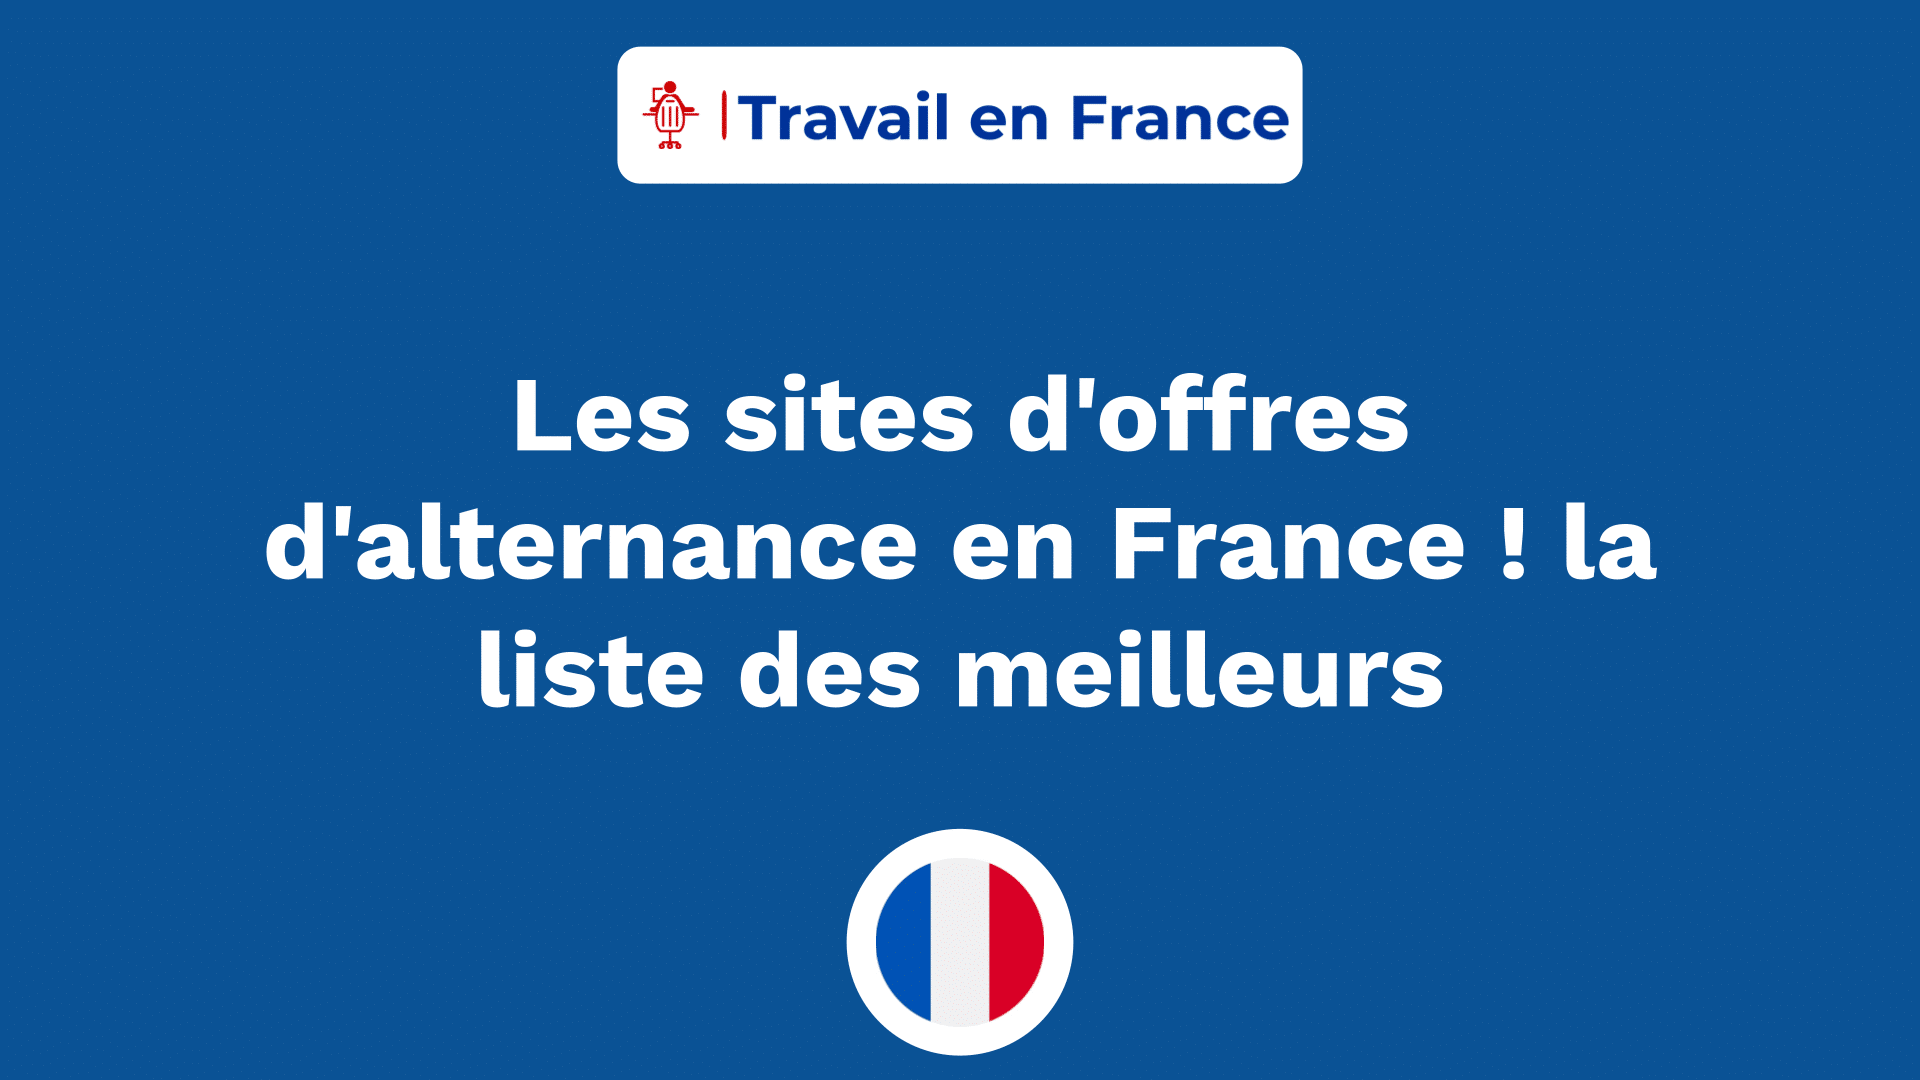 Les sites d'offres d'alternance en France ! la liste des meilleurs.